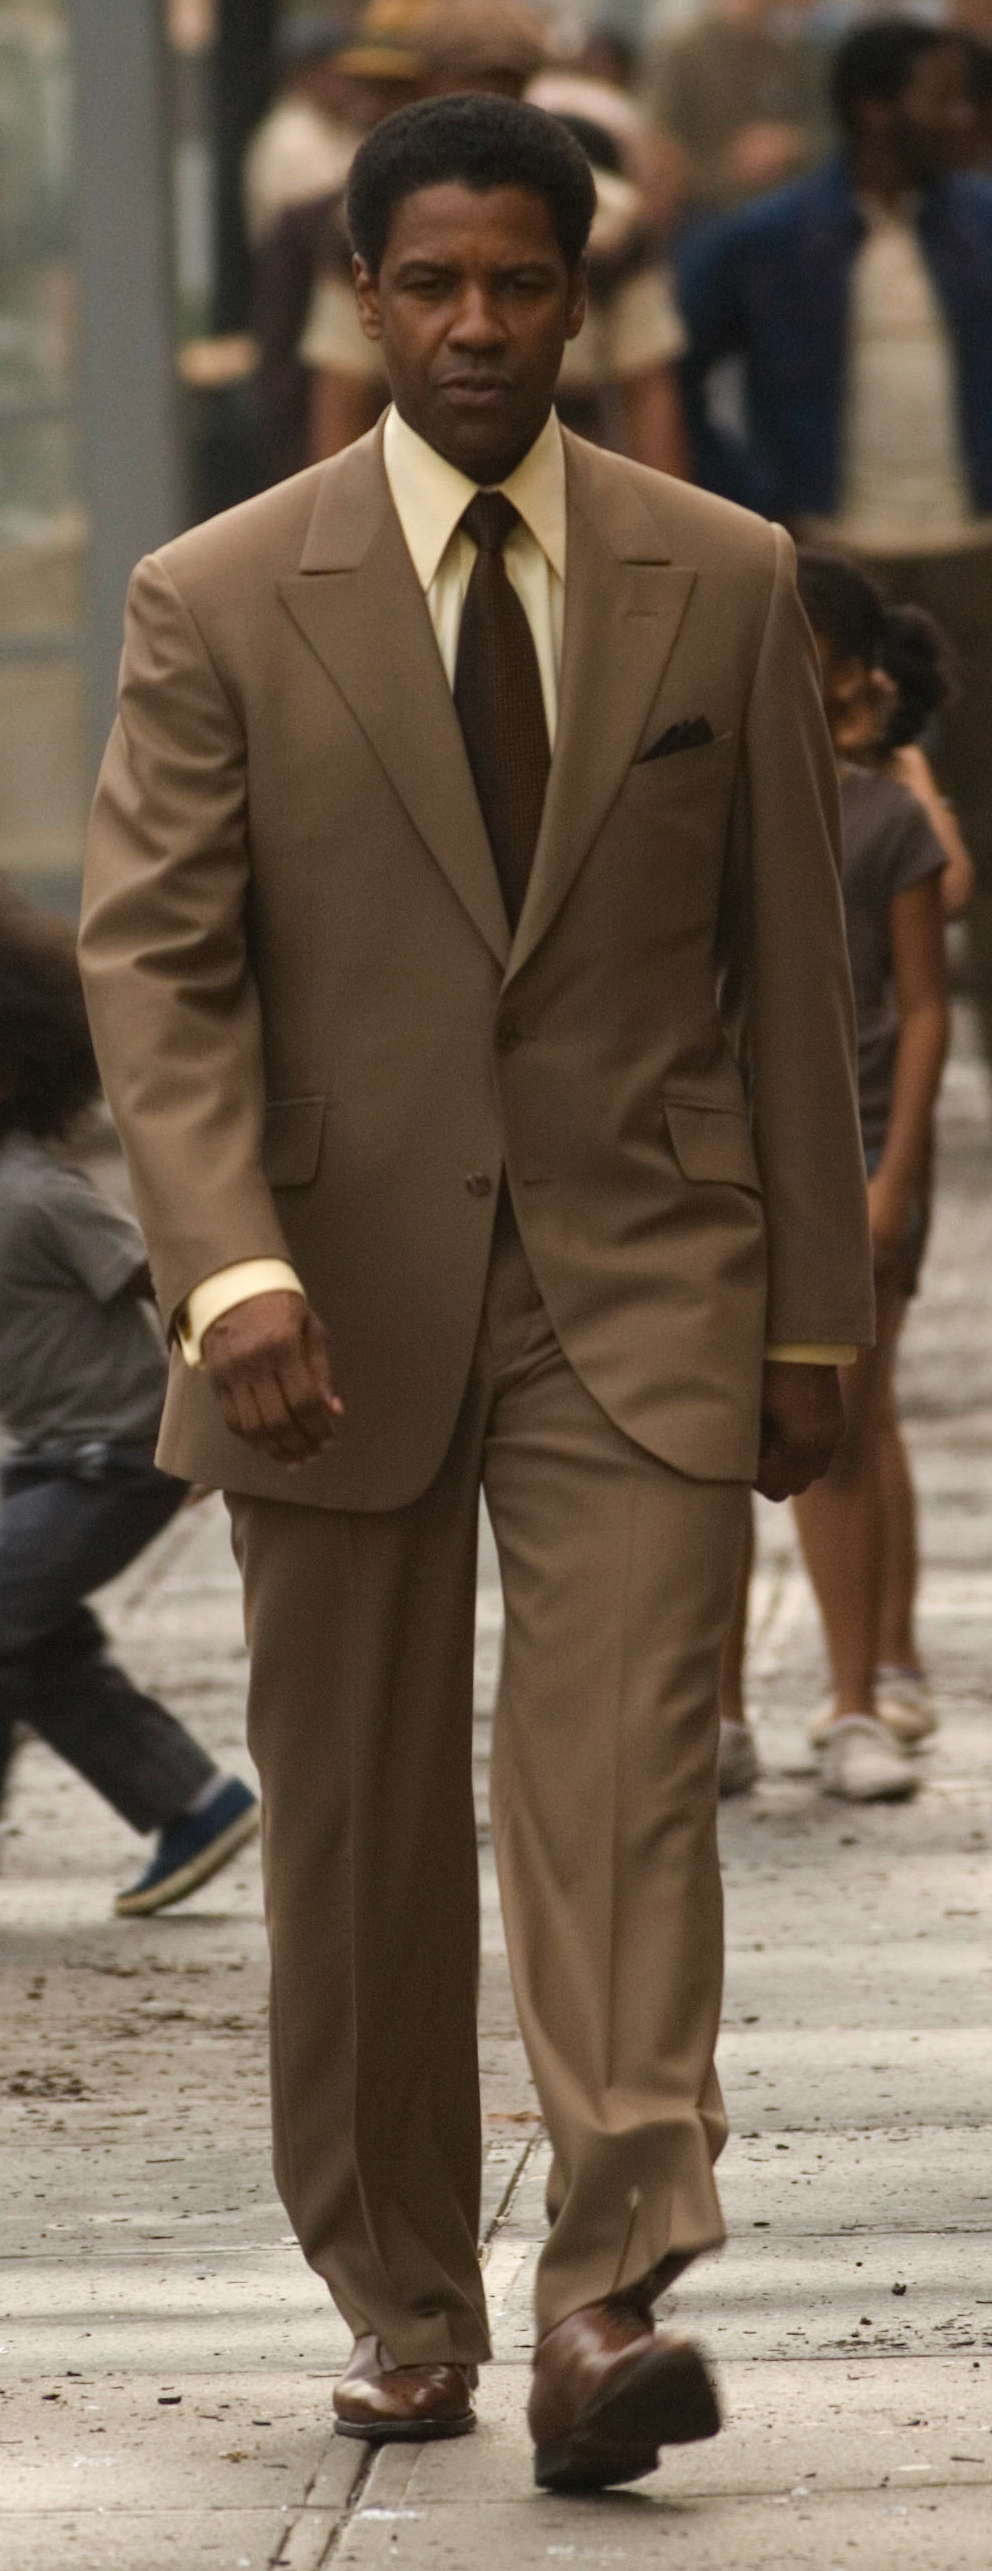 American Gangster: Frank Lucas' Light Brown Killer Suit » BAMF Style